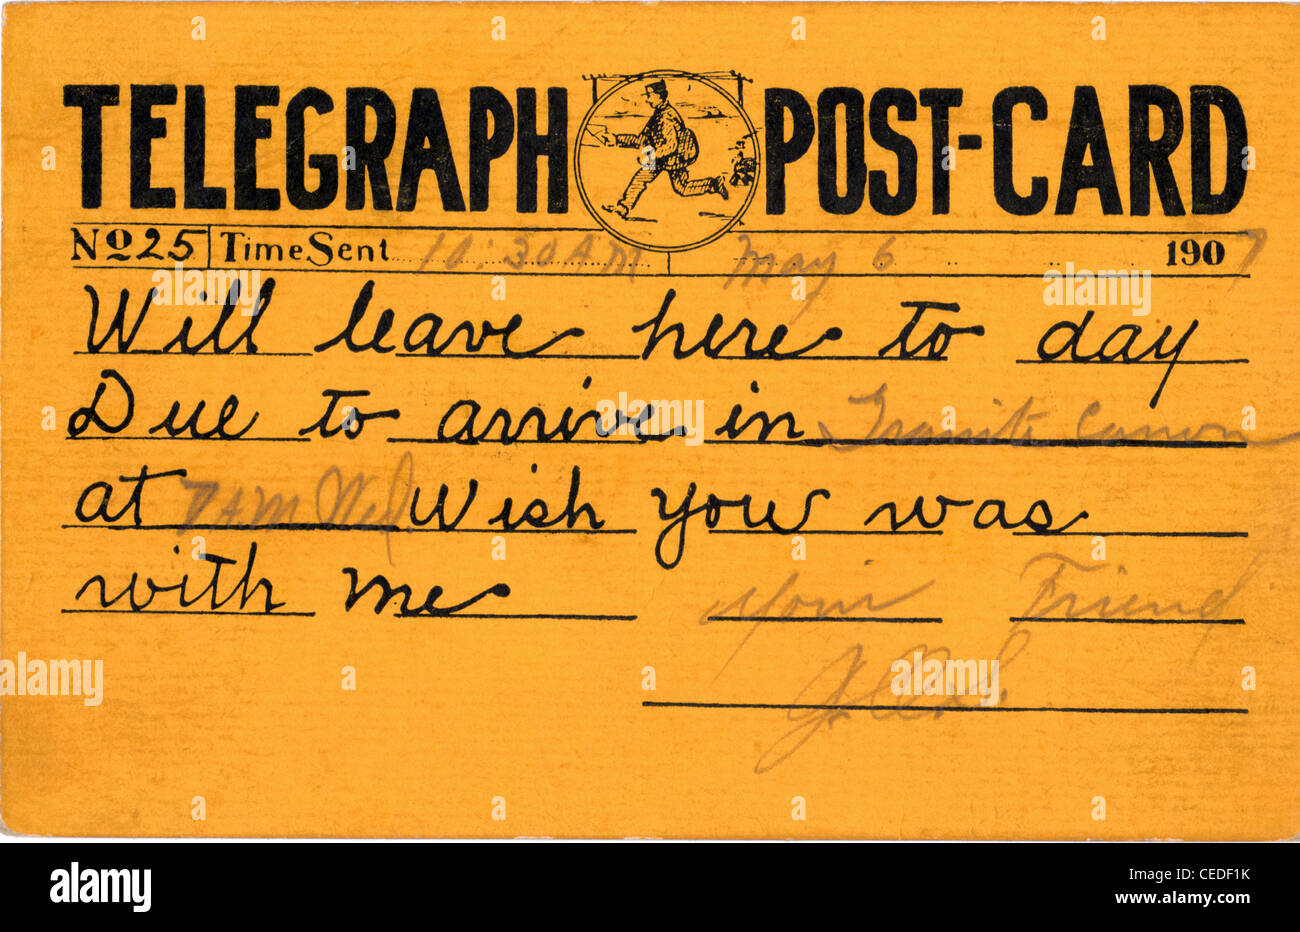 Ein Foto des echten Telegraph Postkarten, Nr. 25, mit handgeschriebenen Nachricht vom Absender zum Empfänger. Gesendet 10:30, 6. Mai 1907. Stockfoto